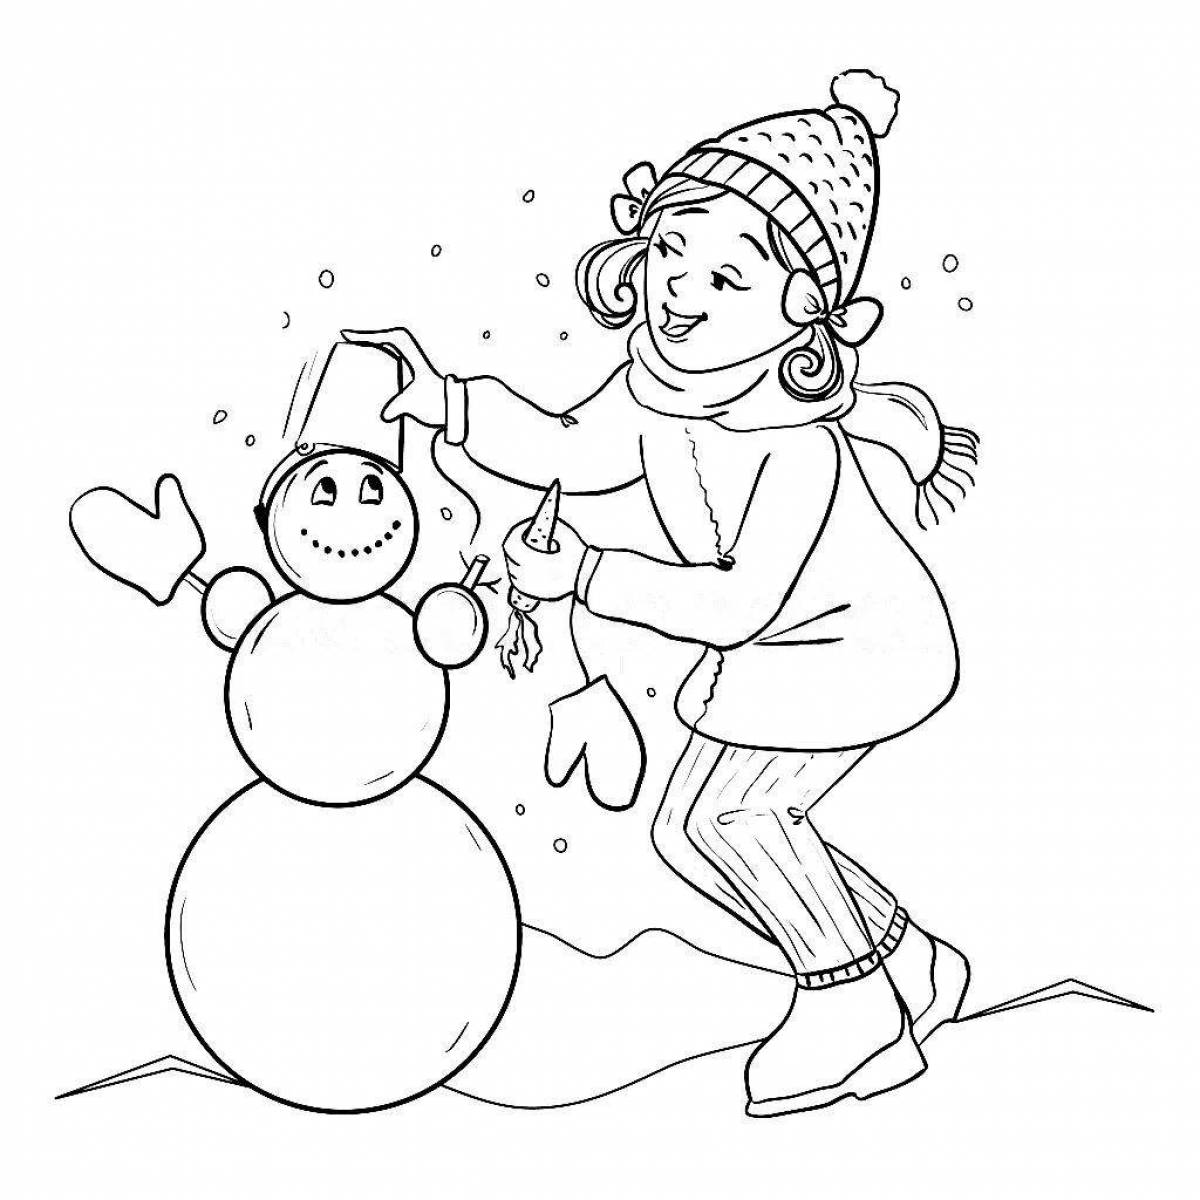 Adorable snowman coloring book